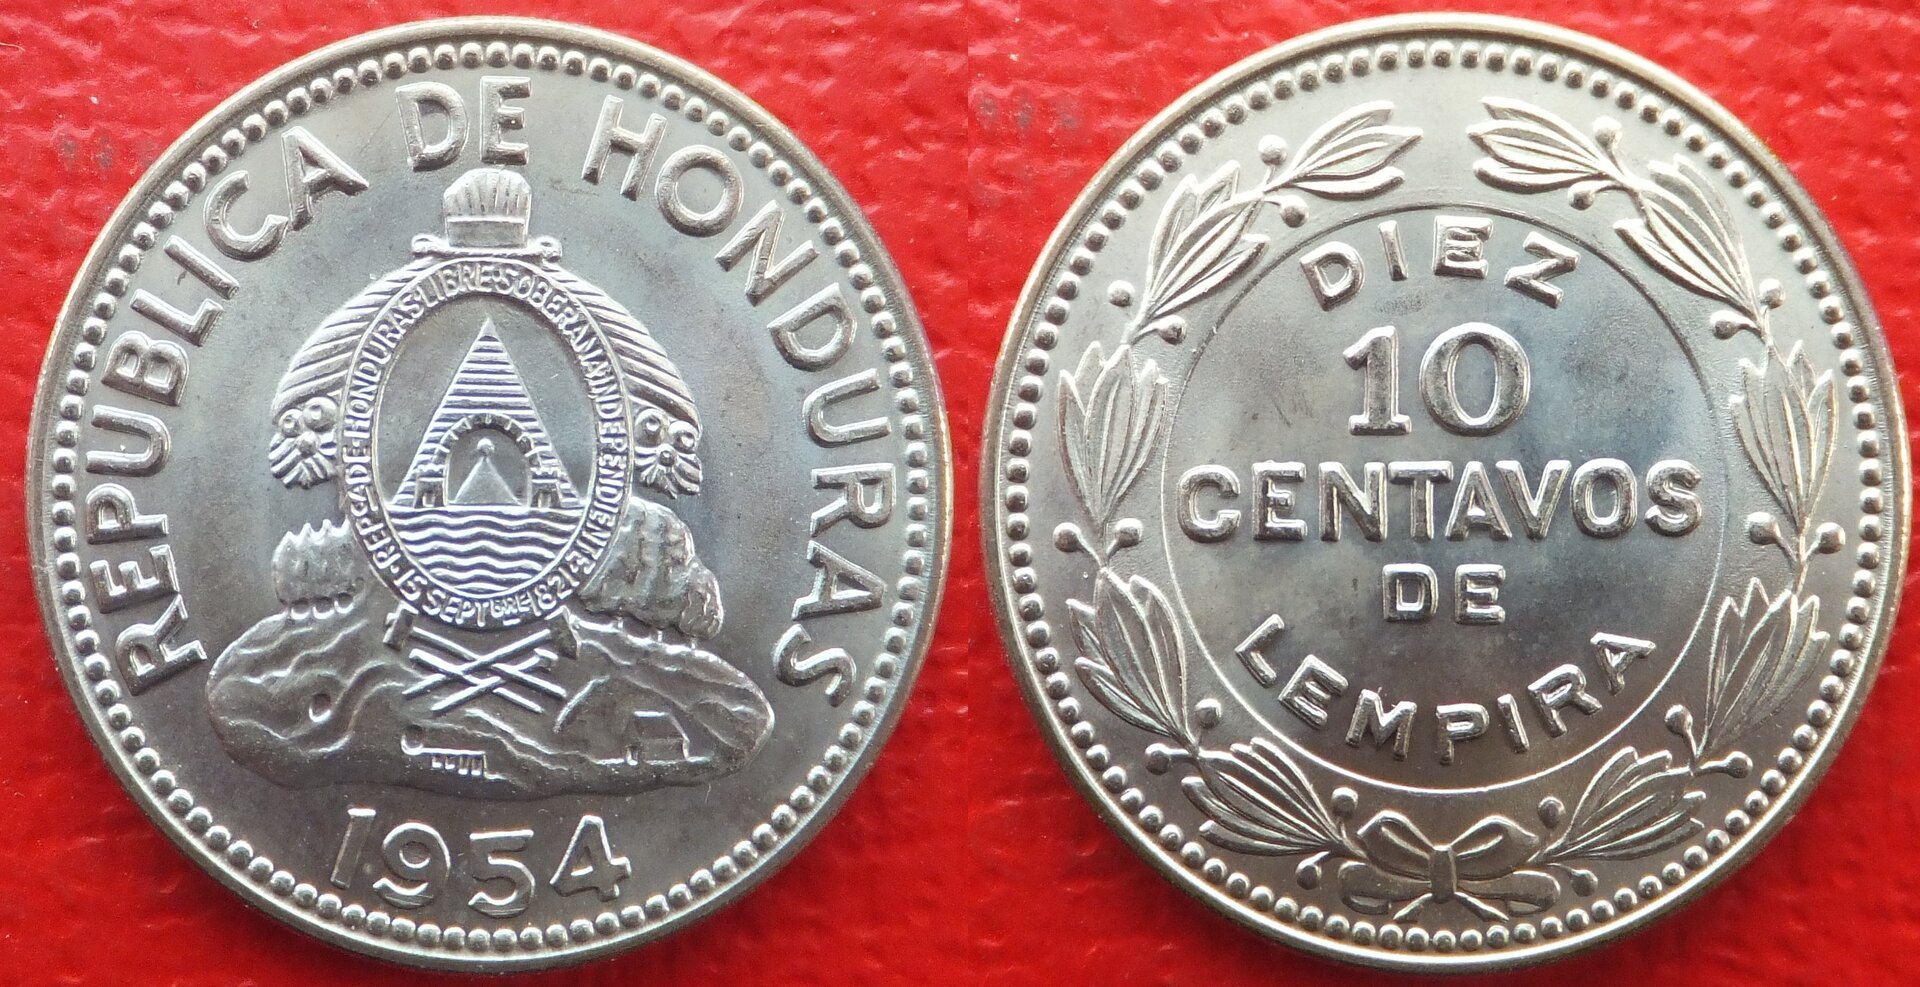 Honduras 10 centavos 1954 (3).jpg